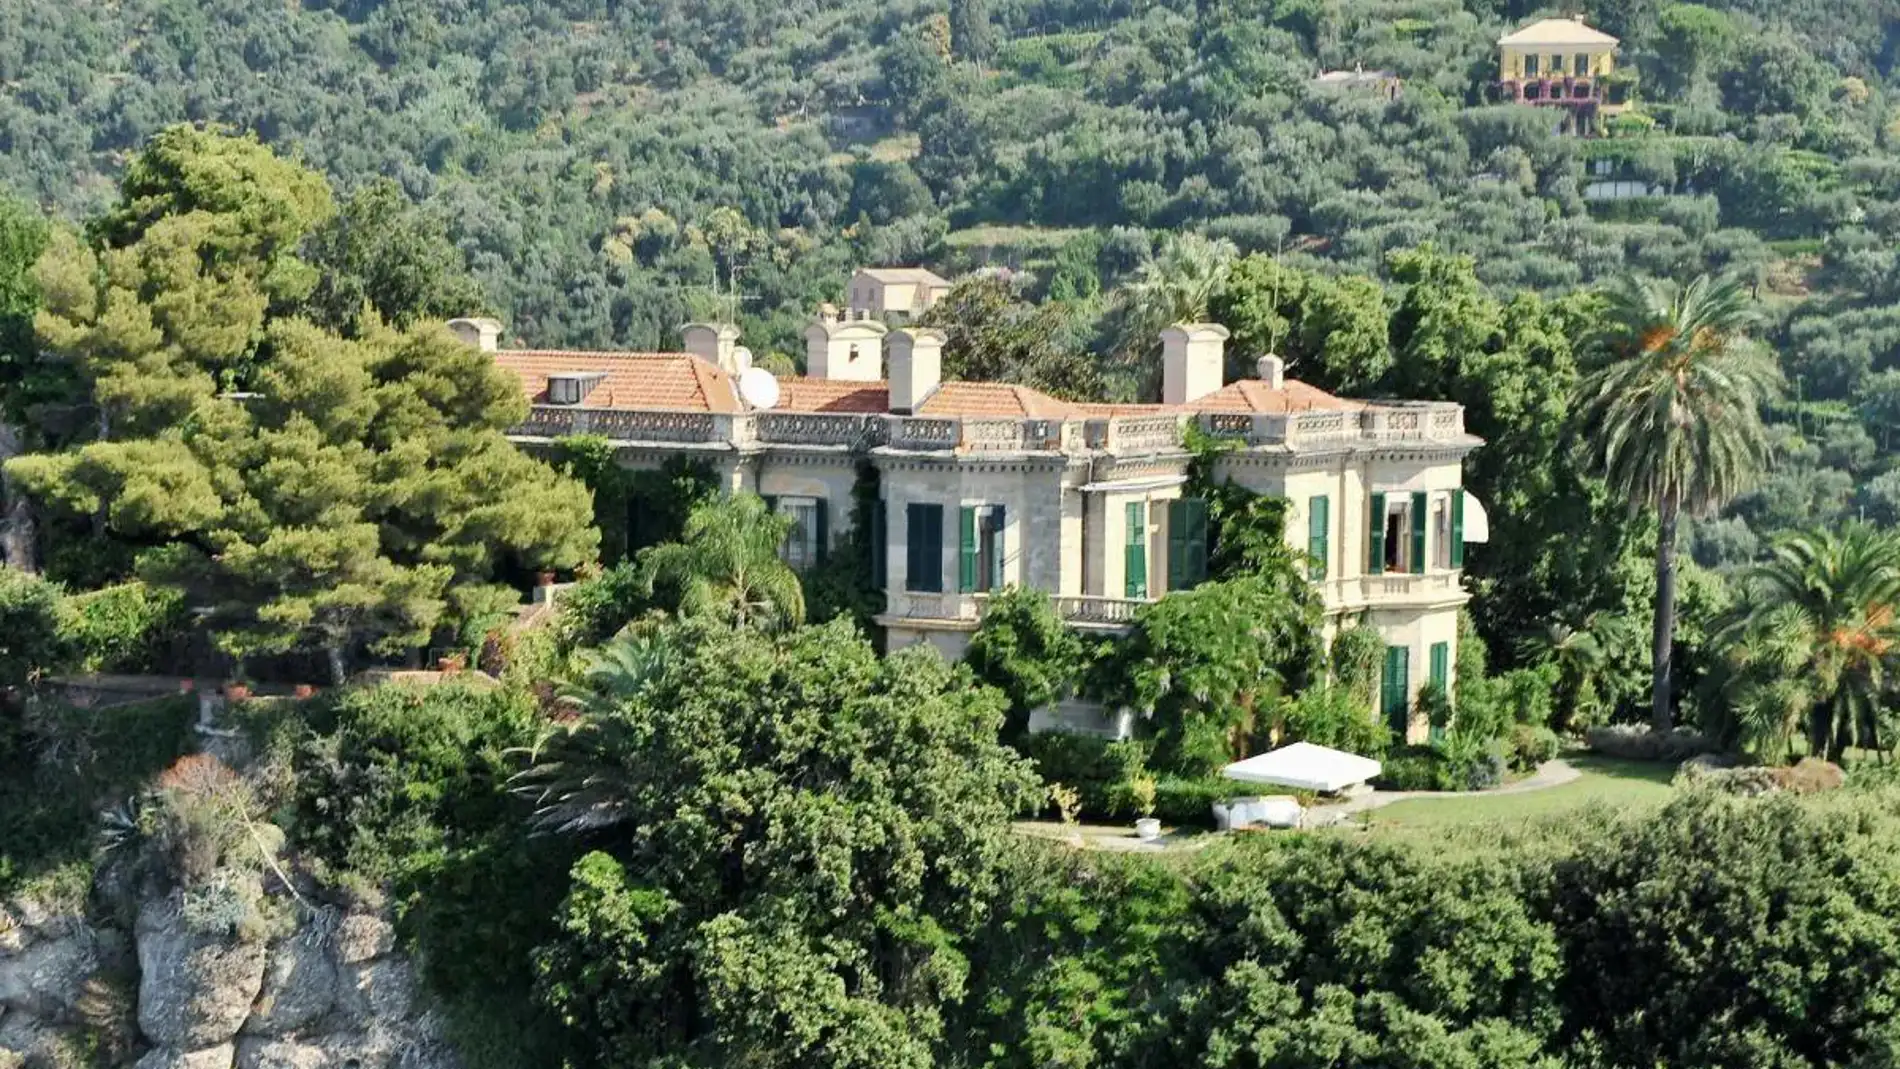 Villa Altachiara es una mansión de estilo colonial que cuenta con 30 habitaciones, piscina y helipuerto